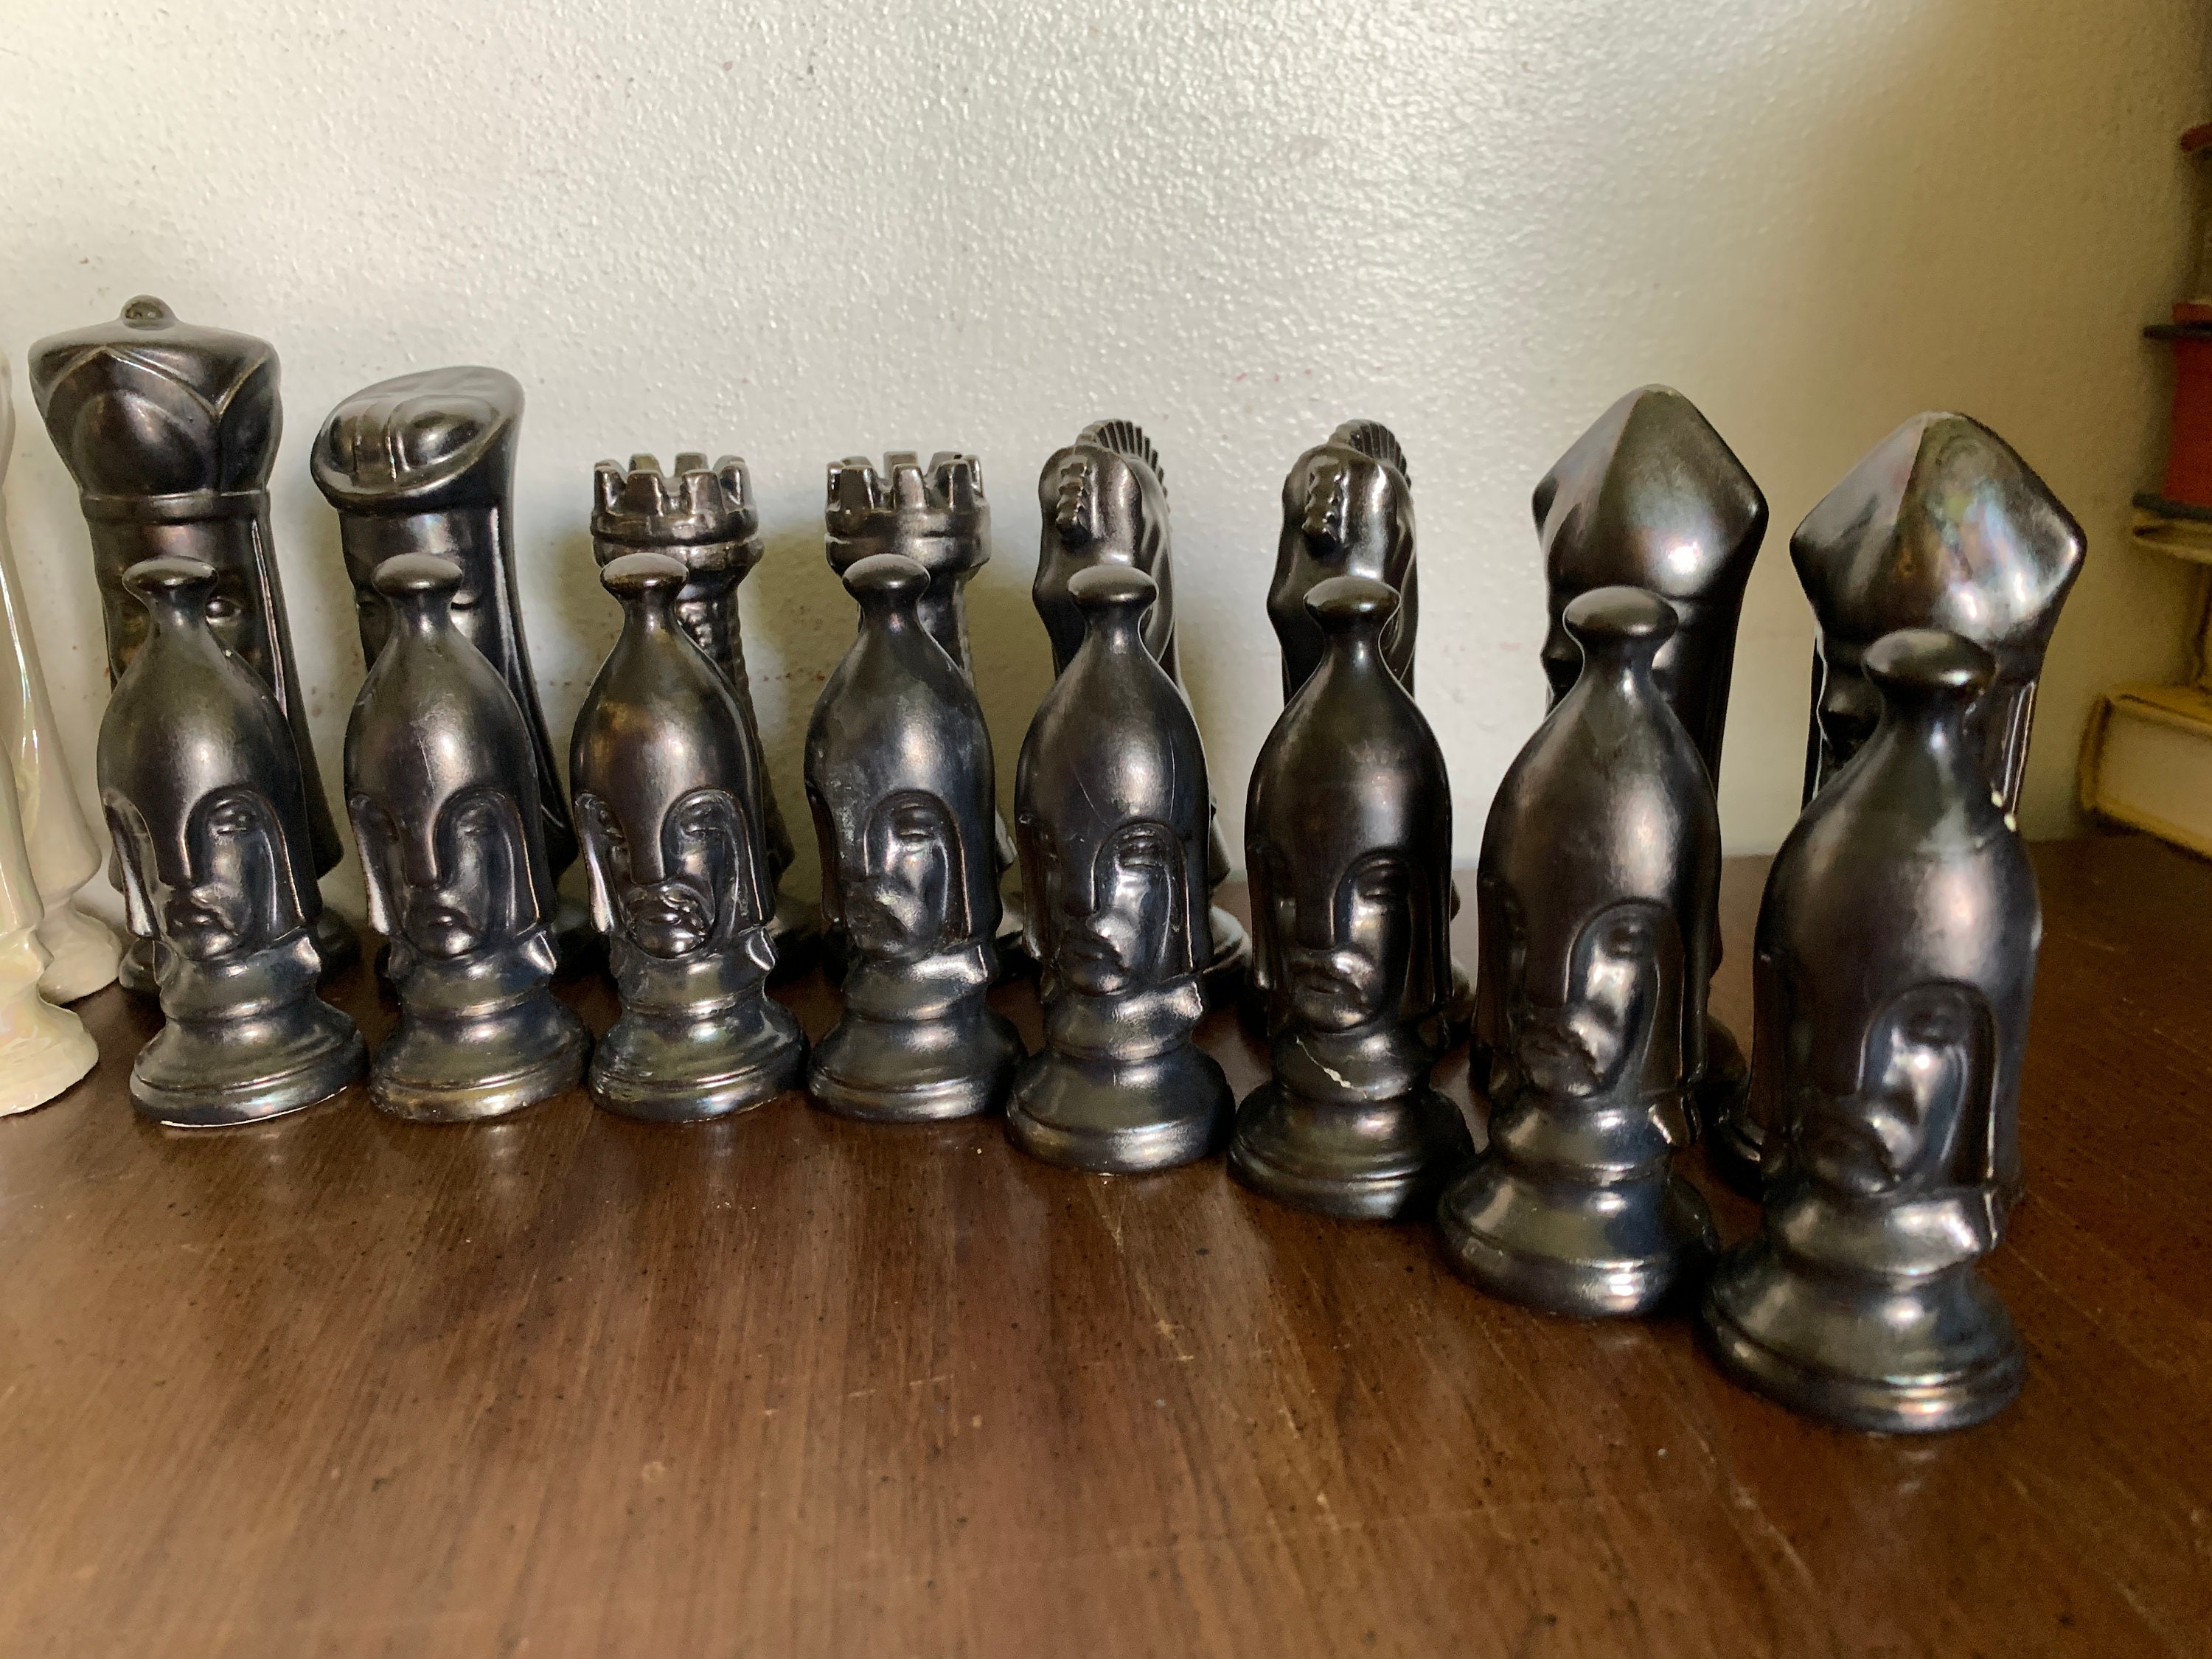 Jogo Japonês Shogi Chessman C/peças De Madeira